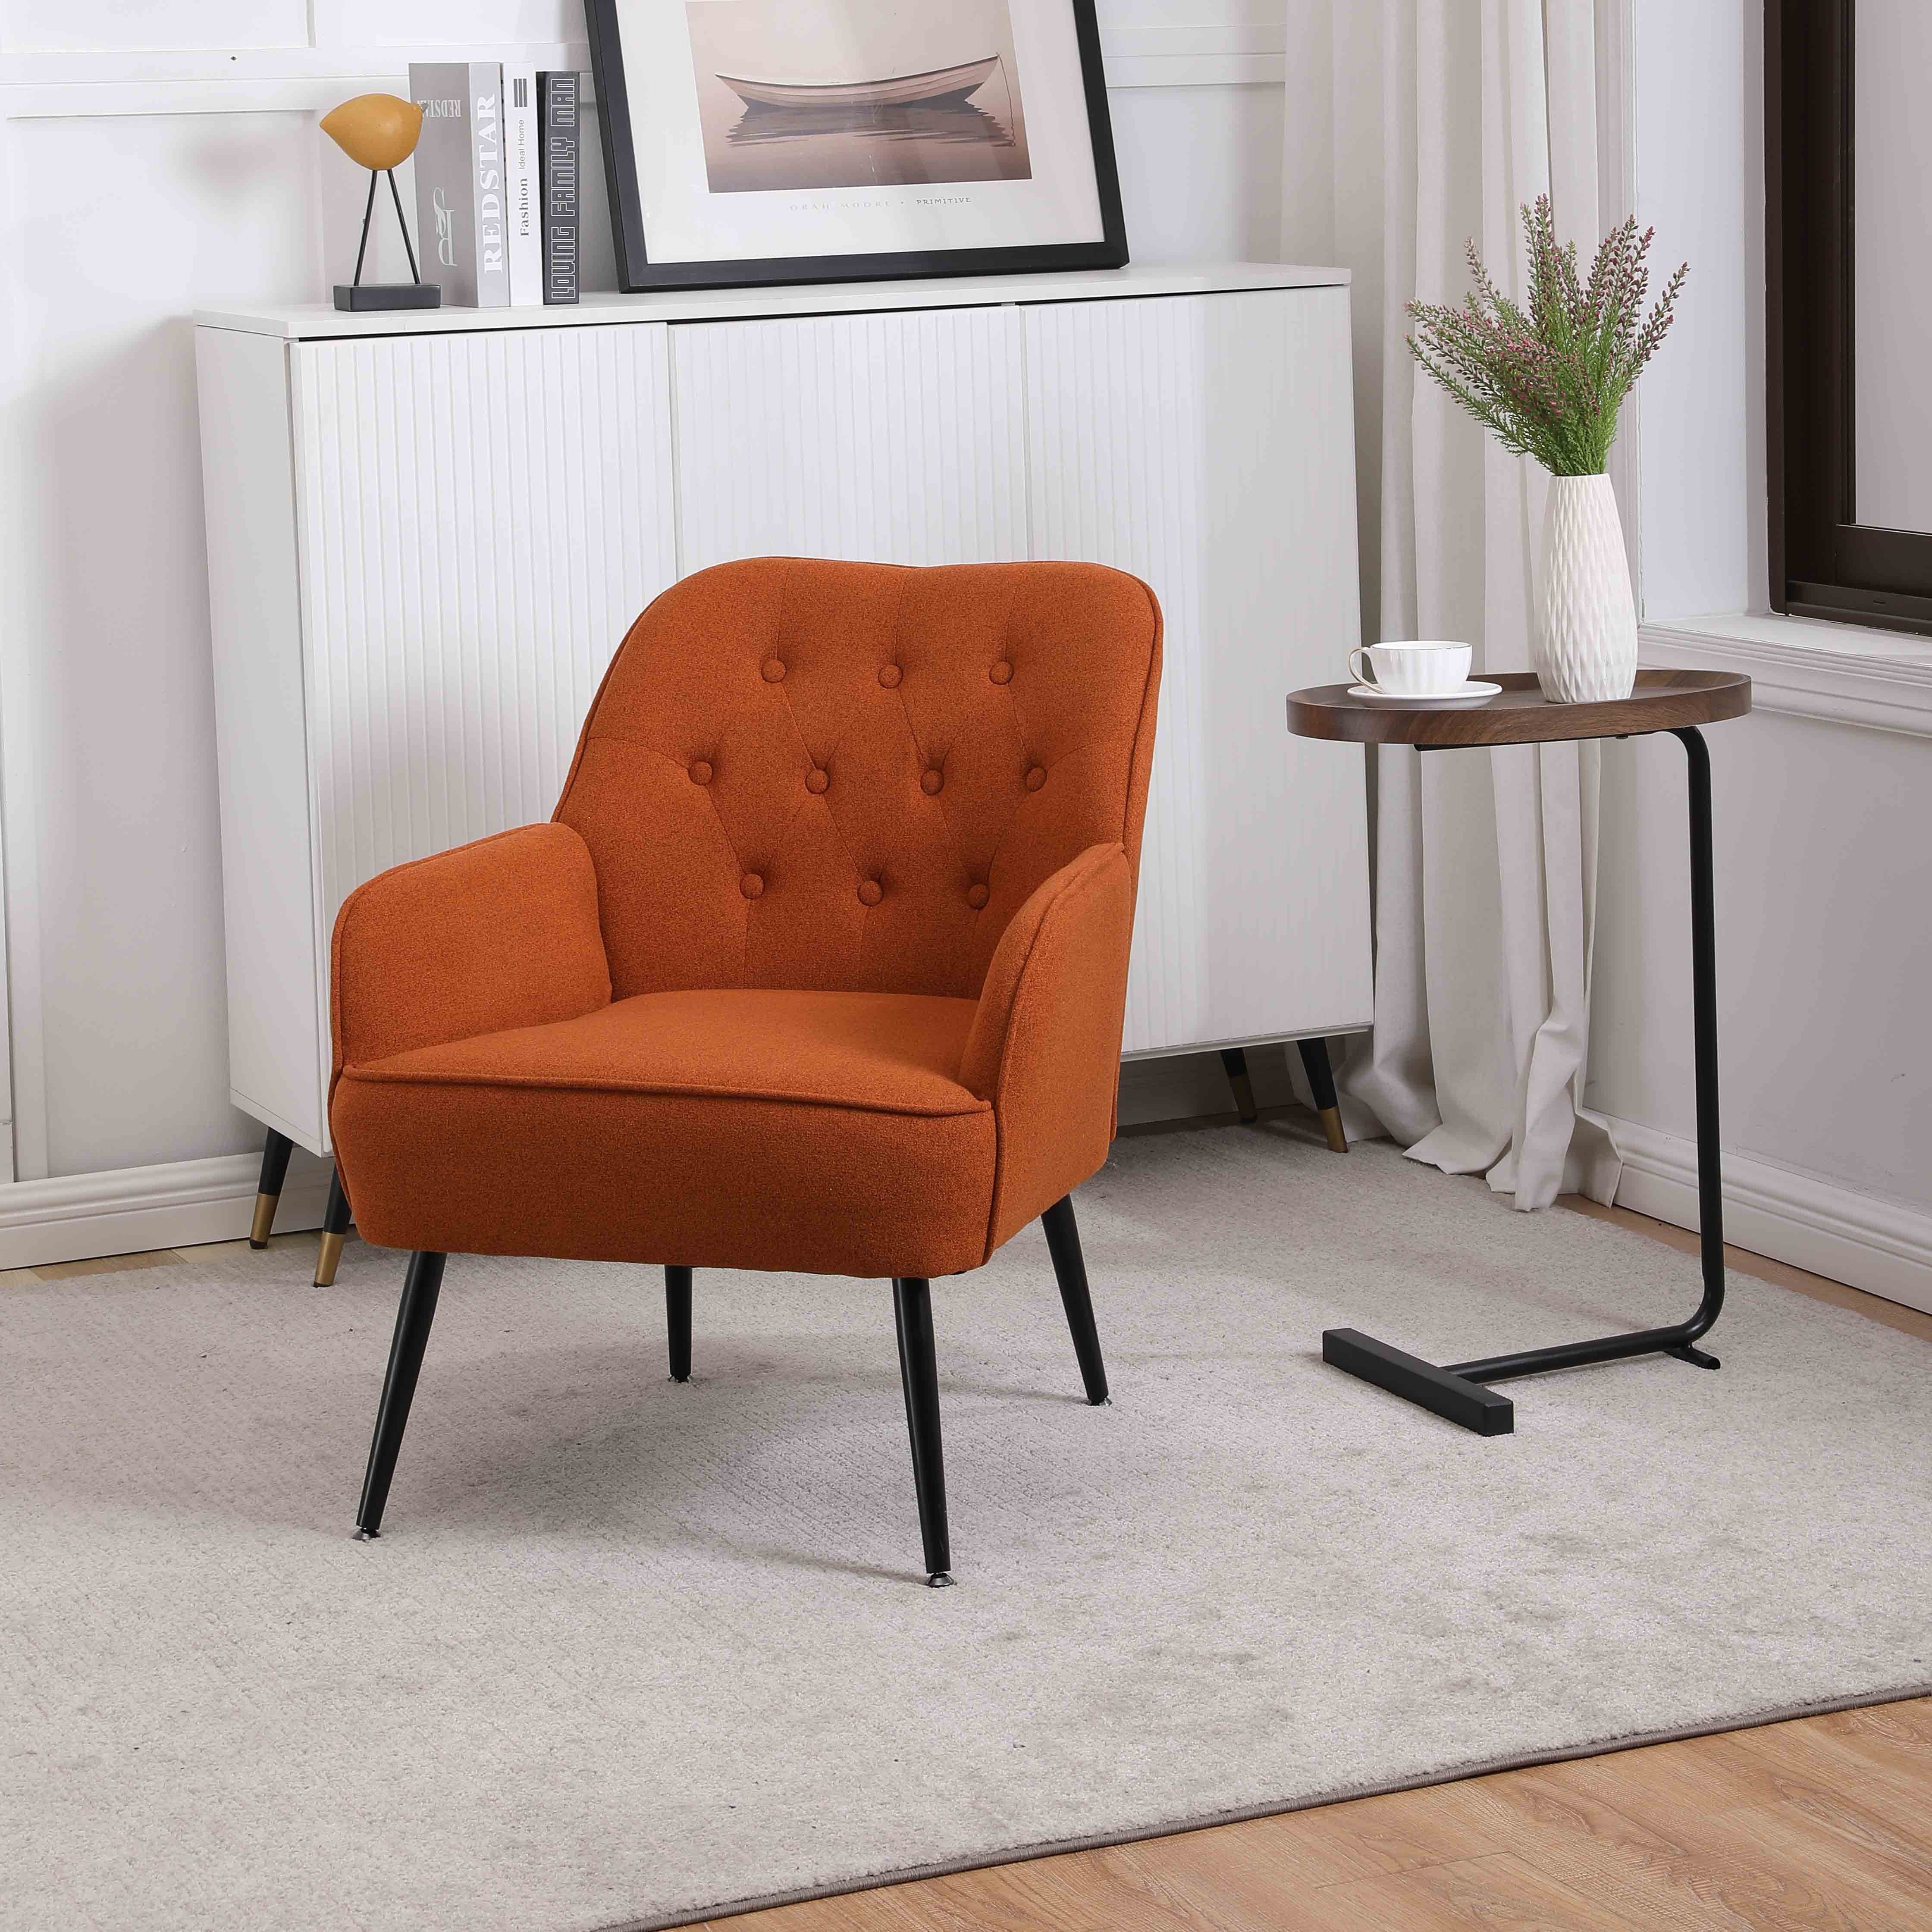 REDOM Loungesessel Relaxsessel Einzelsessel, Polstersessel, Fernsehsessel (Büro Freizeit Gepolsterte Einzelsofa Stuhl), Kaffee Stuhl mit Metallbeinen orange